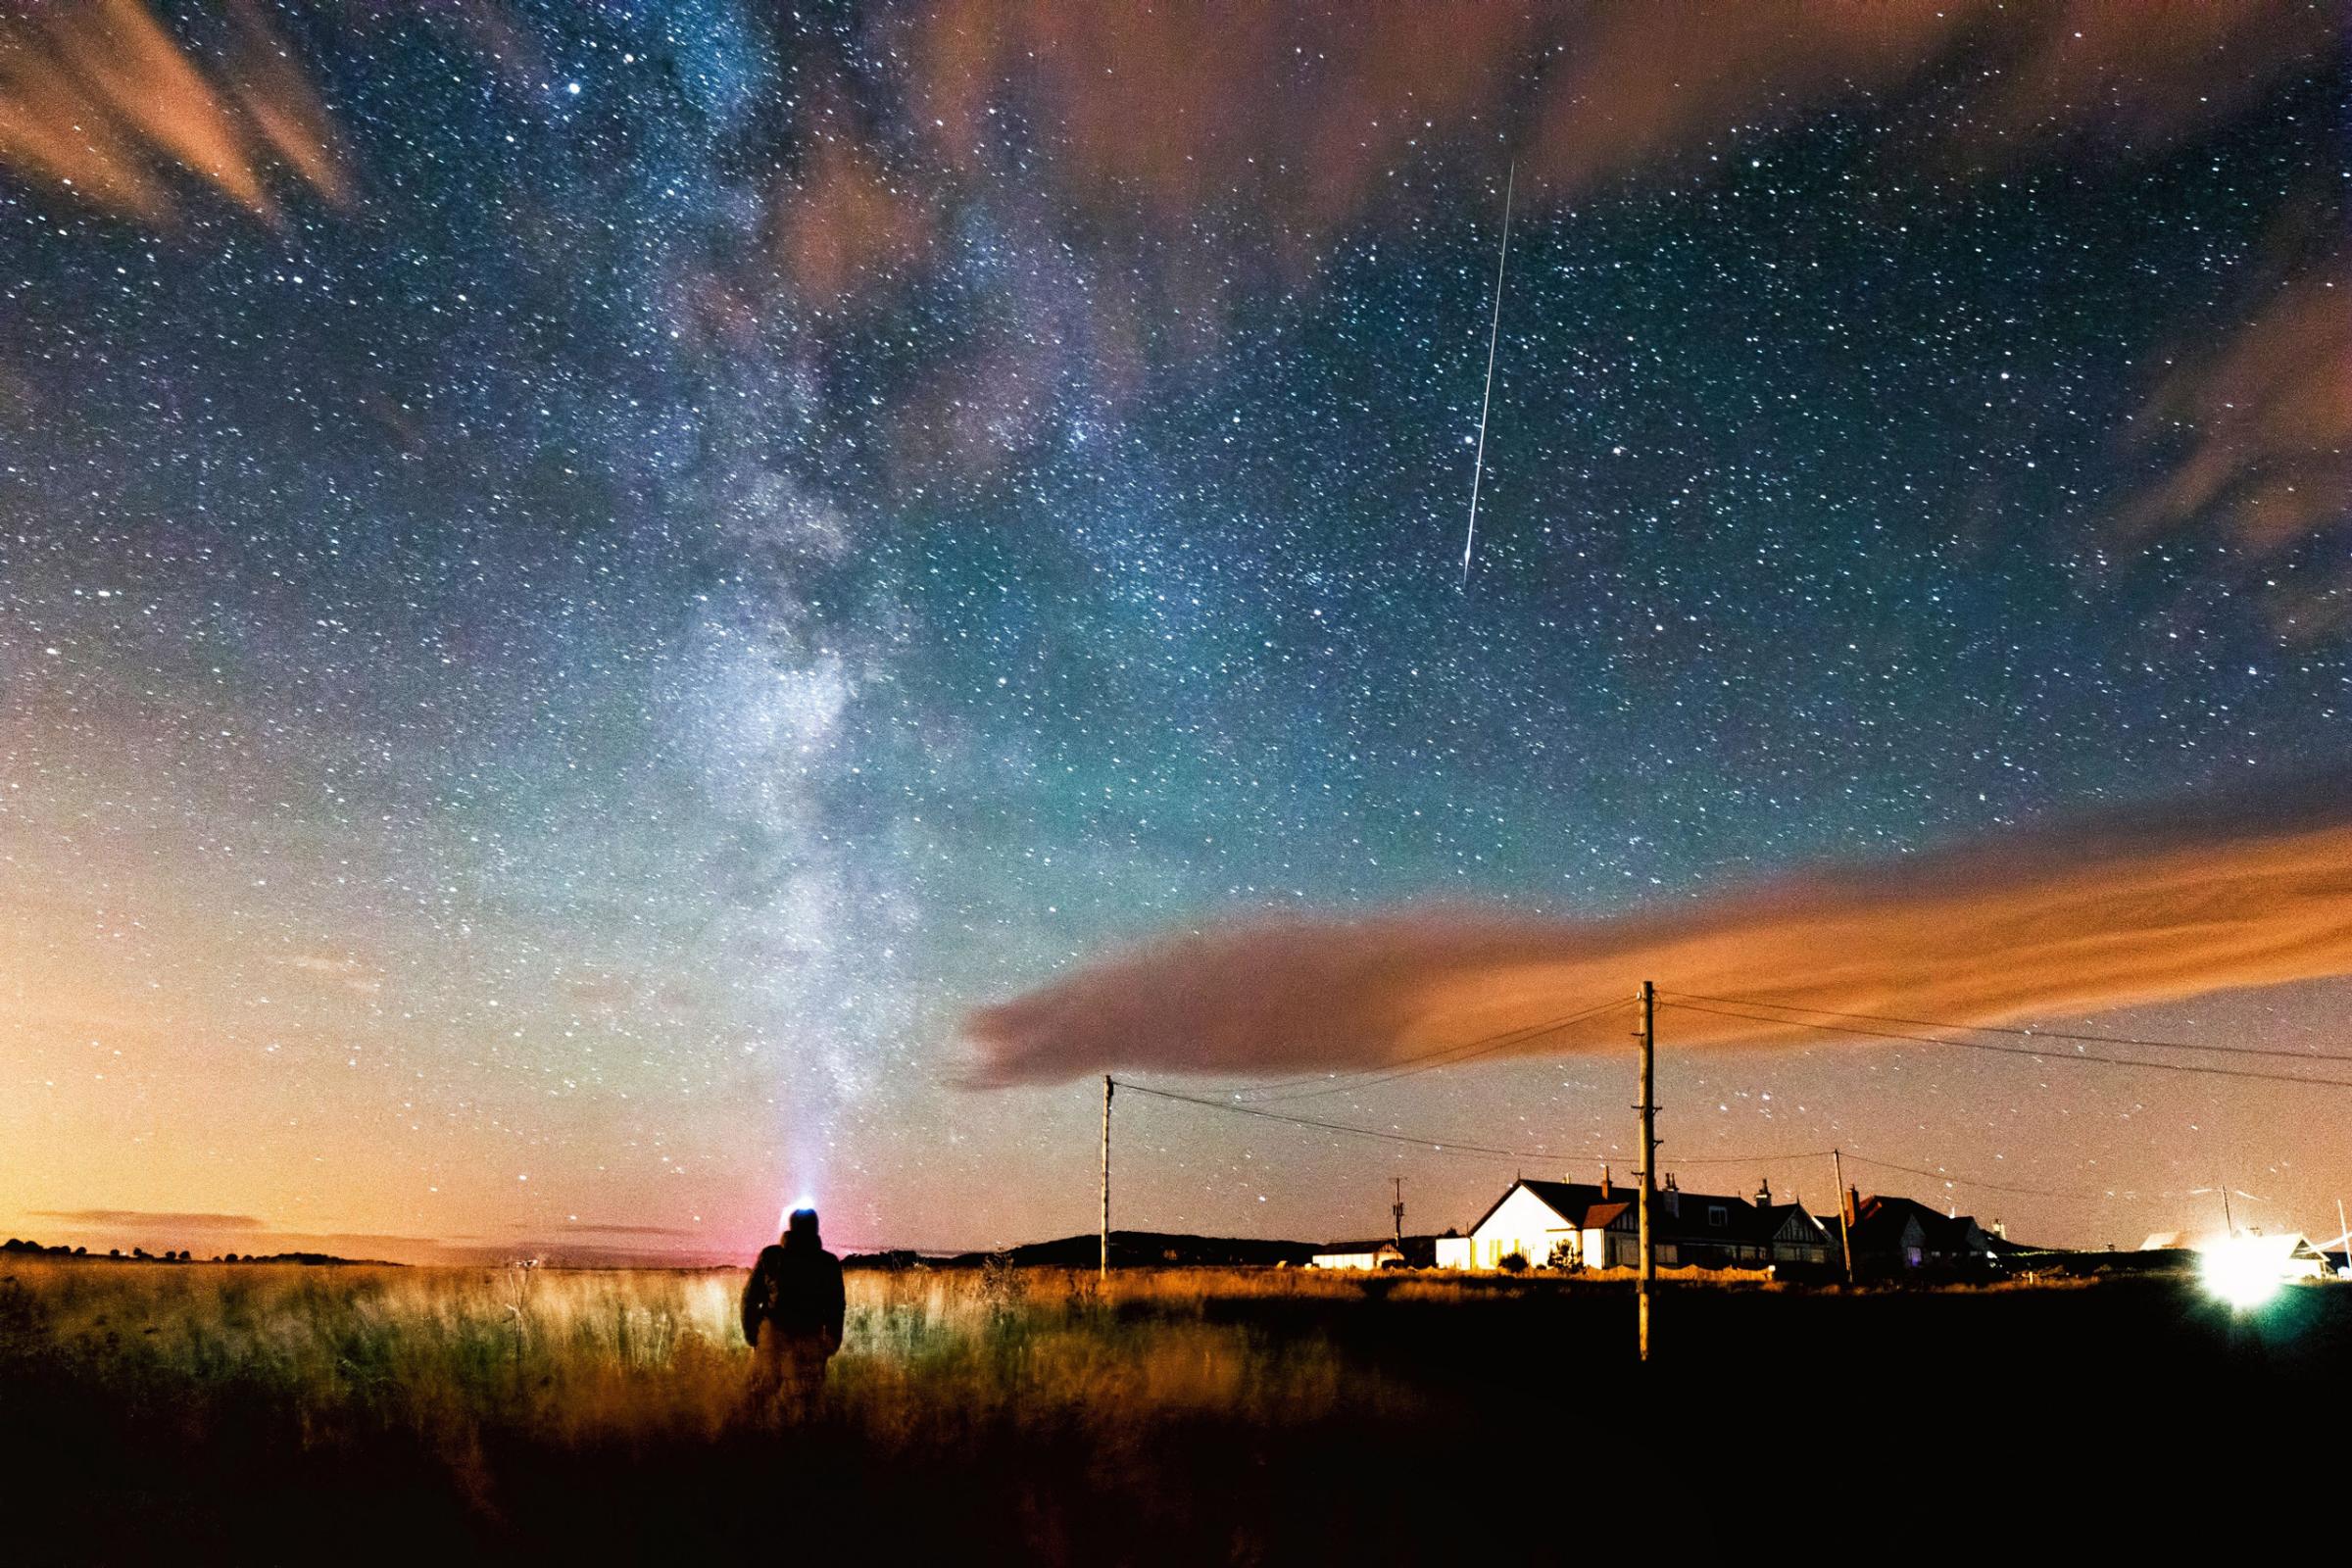 Perseid Meteor Shower August 2015